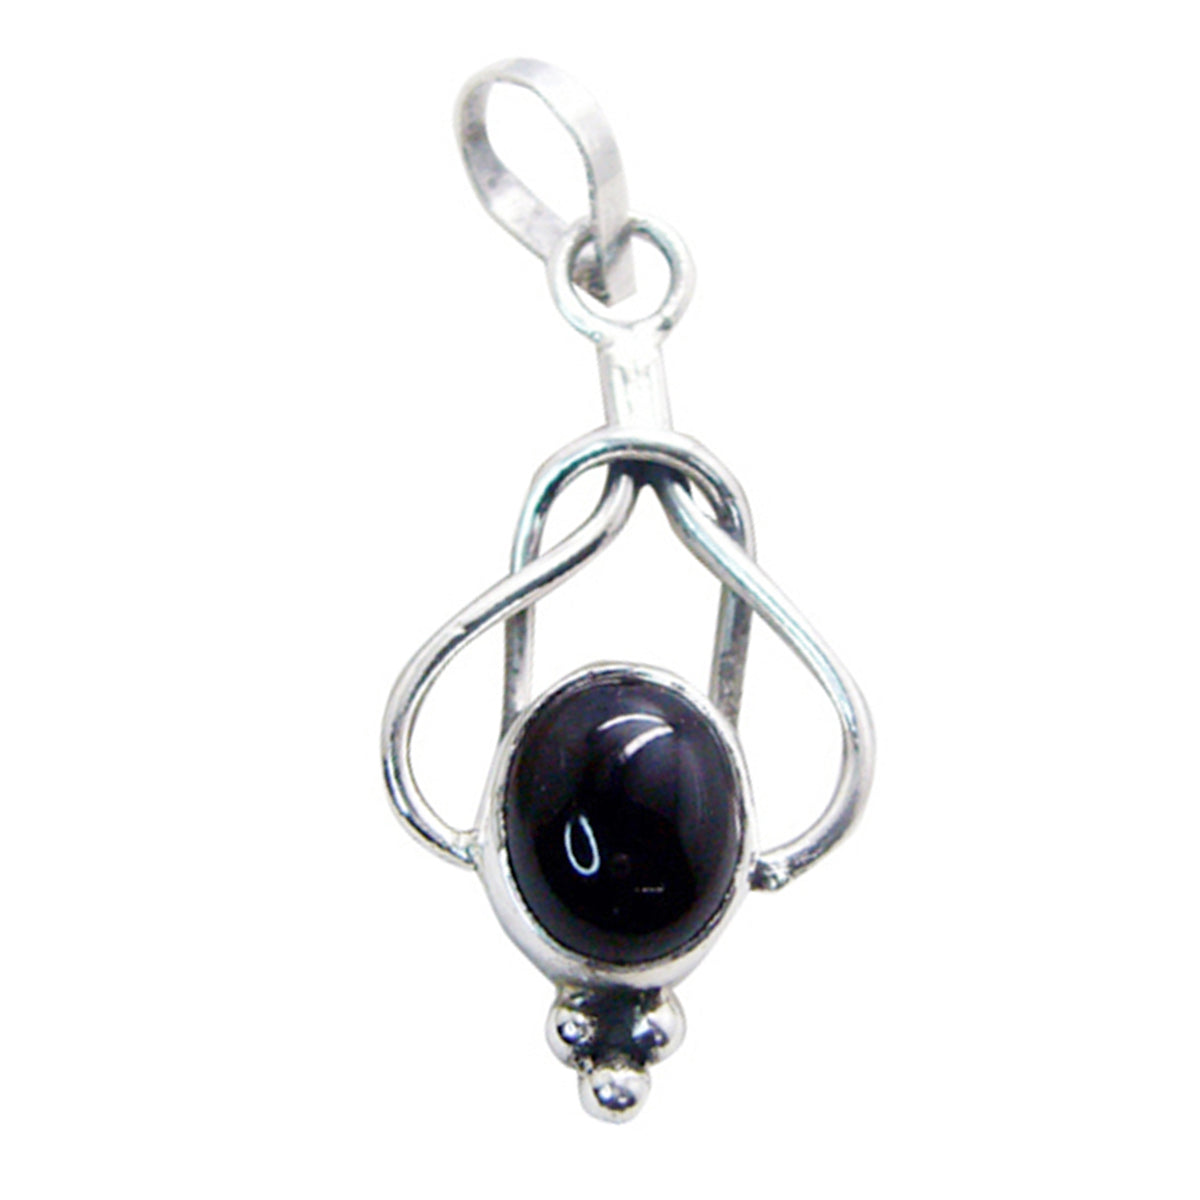 Riyo aantrekkelijke edelsteen ovale cabochon zwart zwart onyx 949 sterling zilveren hanger cadeau voor verjaardag